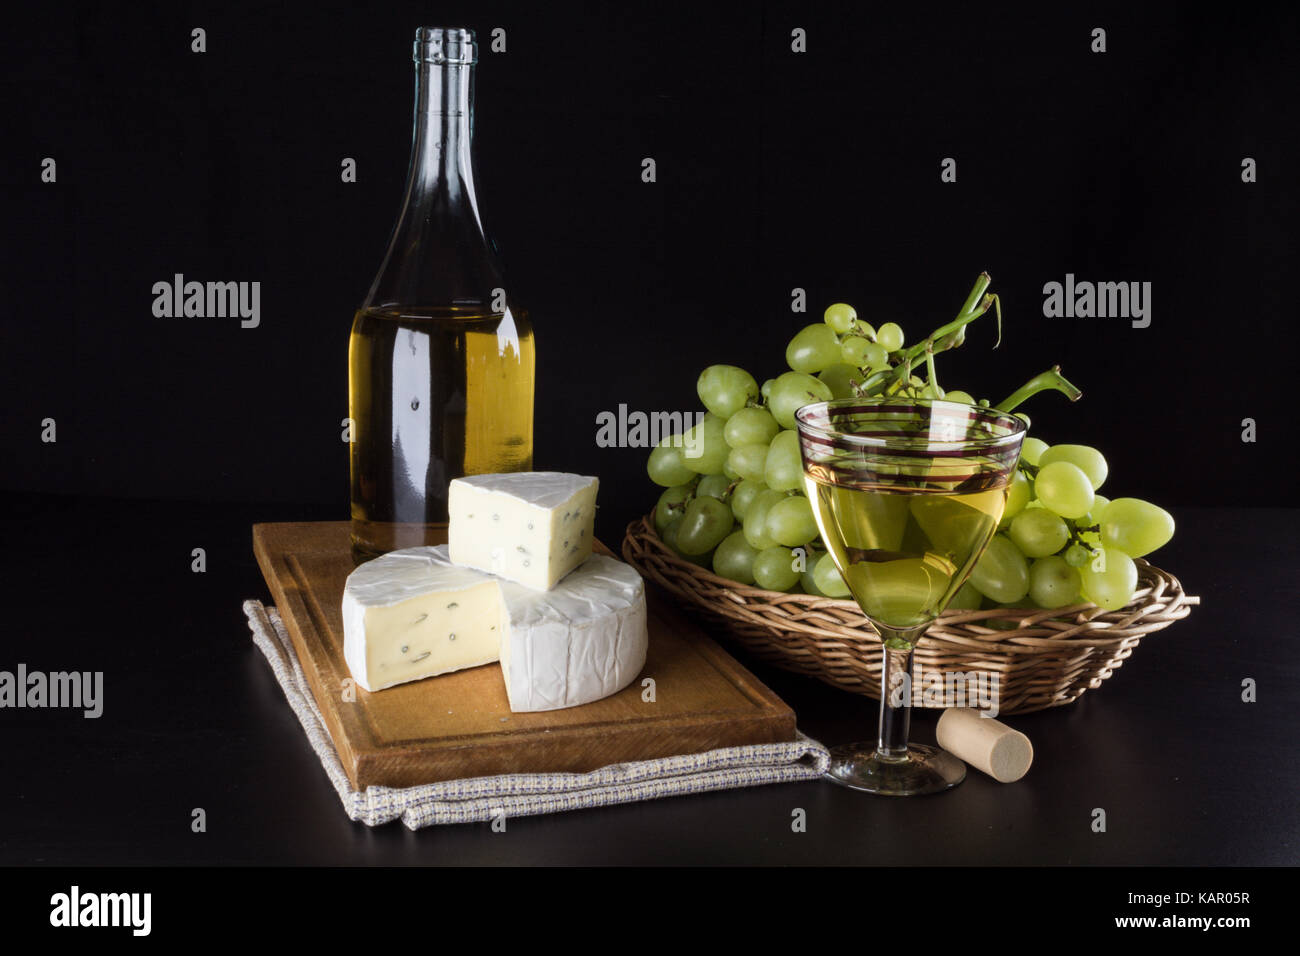 Una bottiglia di vino bianco in background, uva in un canestro e il formaggio dor blu e un bicchiere di vino bianco su sfondo nero Foto Stock